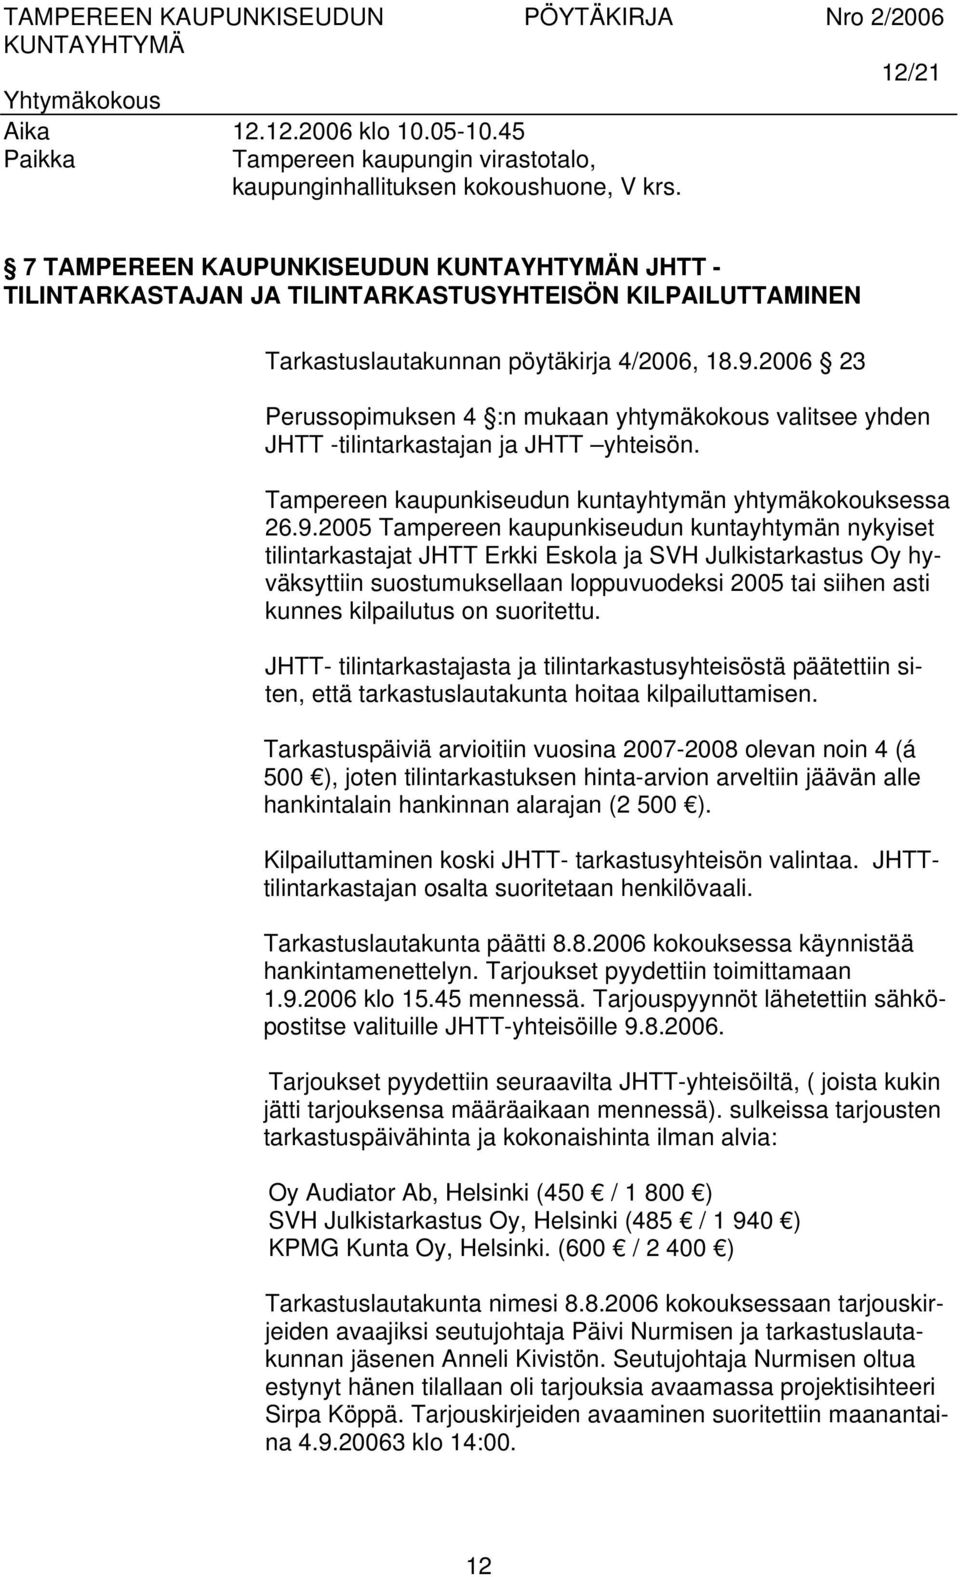 2005 Tampereen kaupunkiseudun kuntayhtymän nykyiset tilintarkastajat JHTT Erkki Eskola ja SVH Julkistarkastus Oy hyväksyttiin suostumuksellaan loppuvuodeksi 2005 tai siihen asti kunnes kilpailutus on